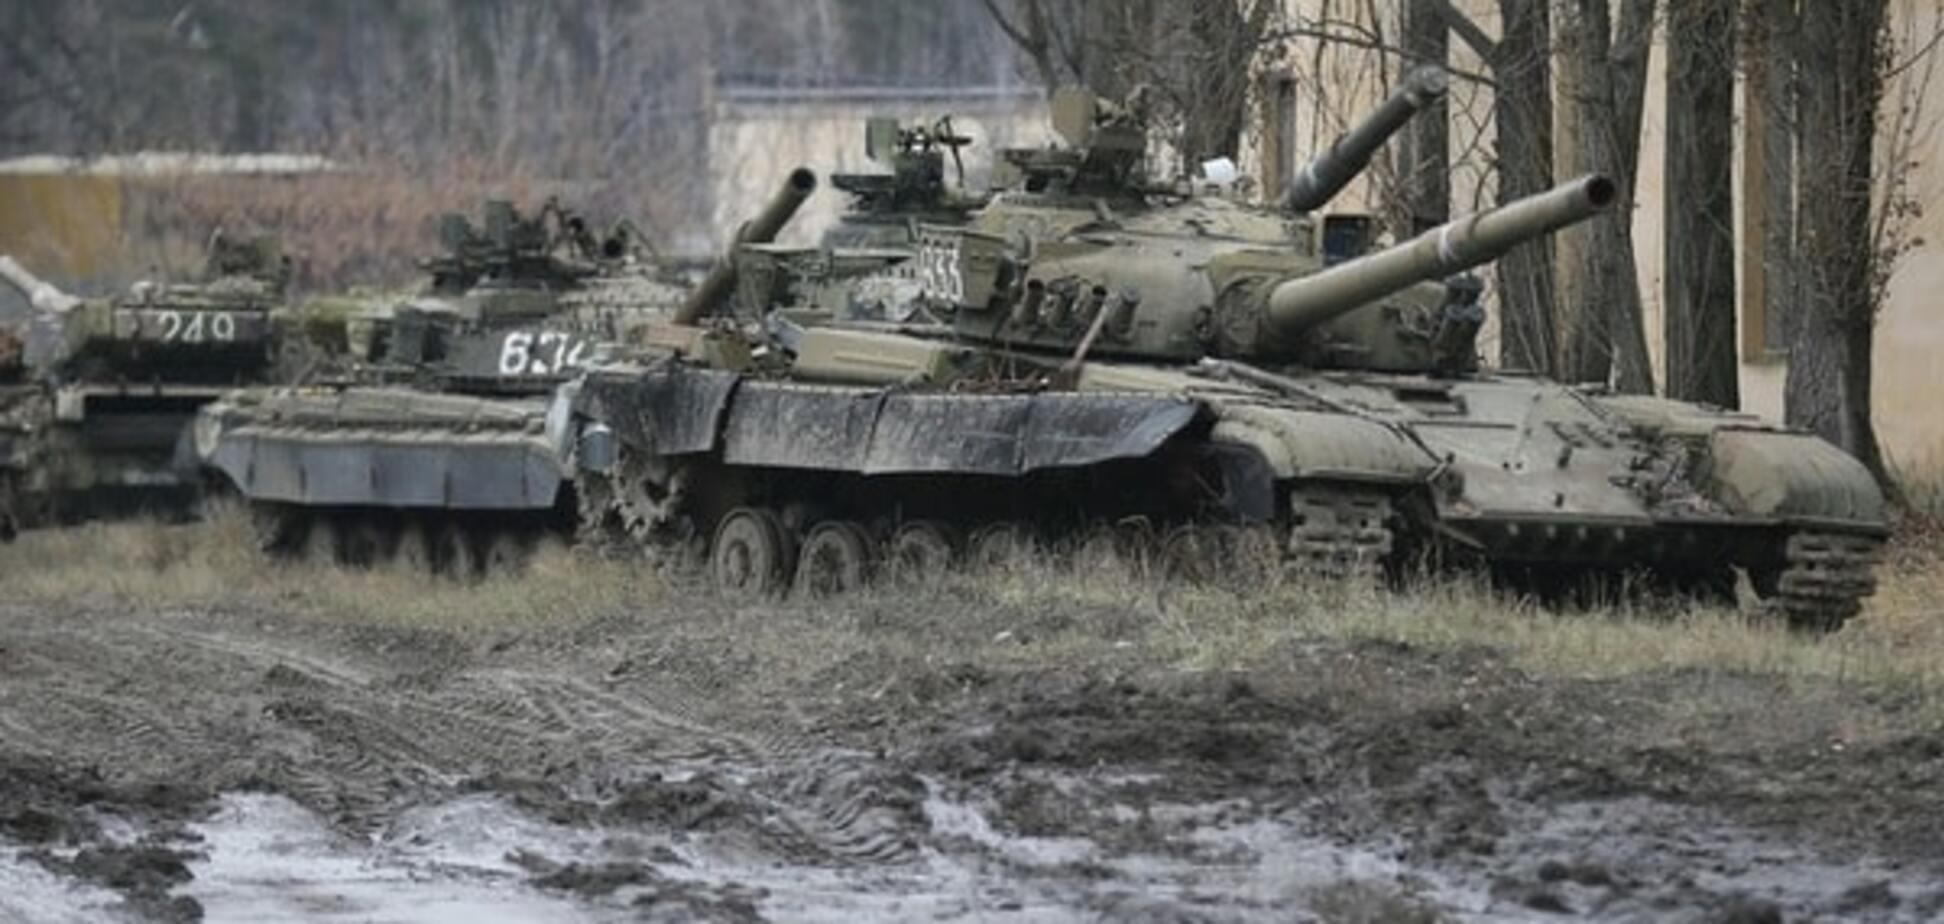 Неспокойное перемирие: Голышев заявил, что на Донбассе 'нет никакой войны'